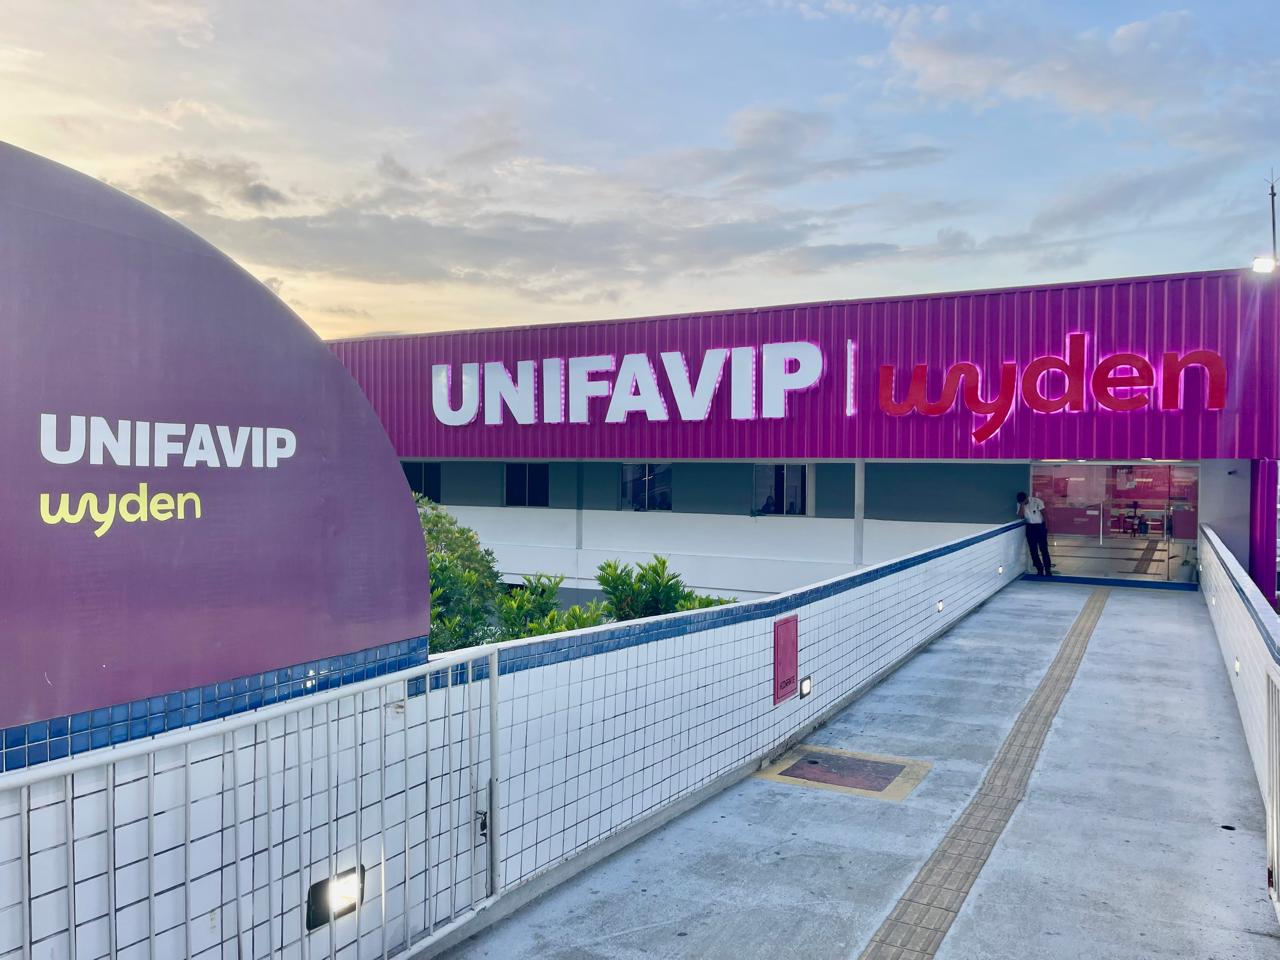 Em parceria com Receita Federal, UniFavip Wyden promove Plantão Fiscal gratuito